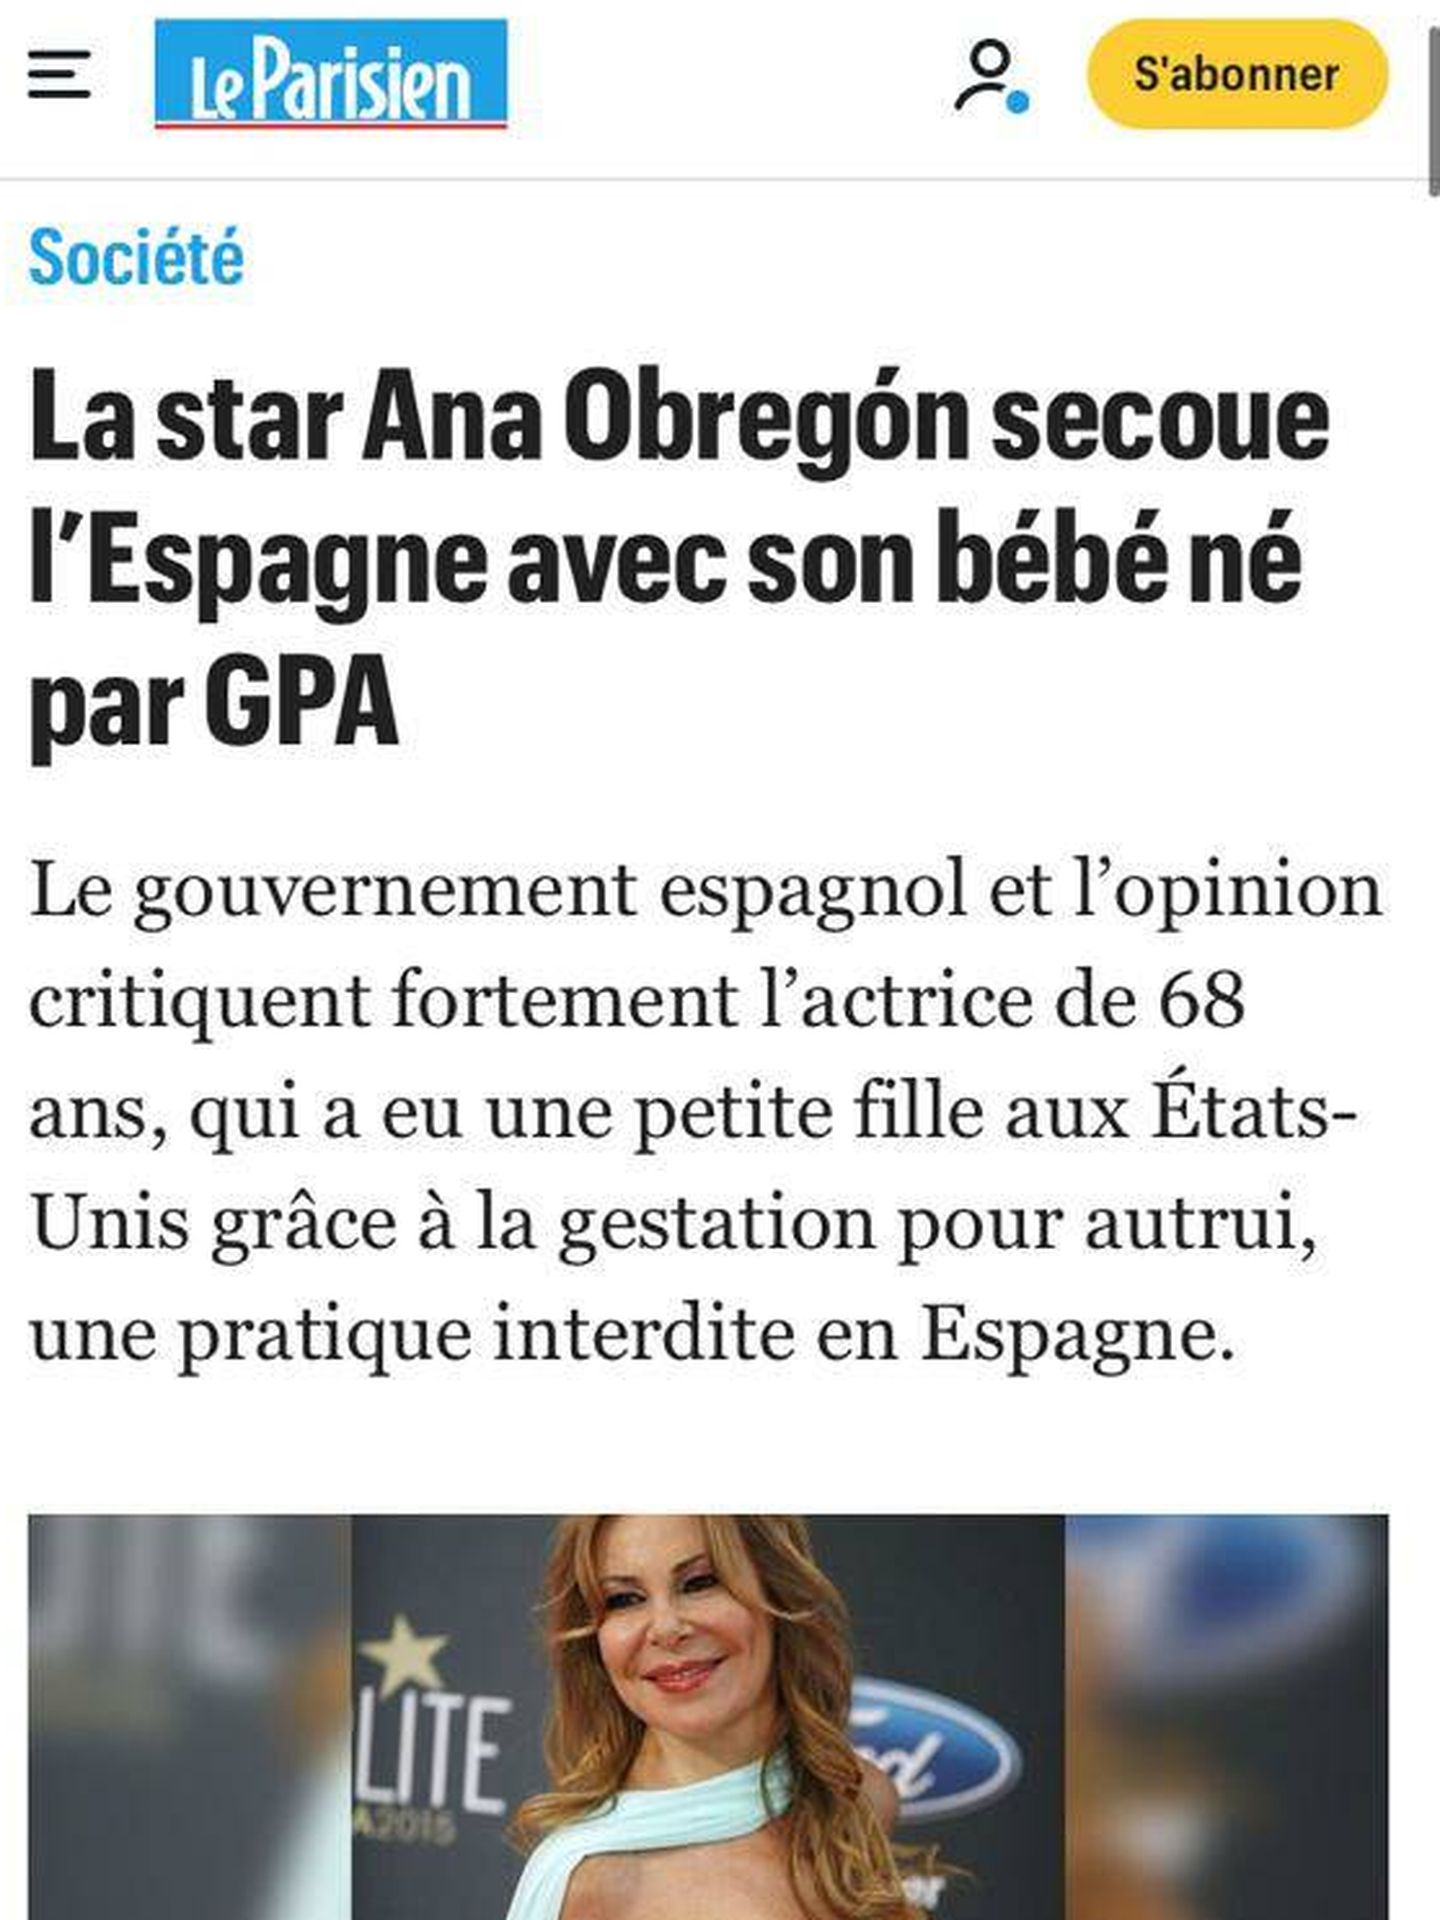 Captura de pantalla de la noticia de 'Le Parisien' sobre la maternidad de Ana Obregón.